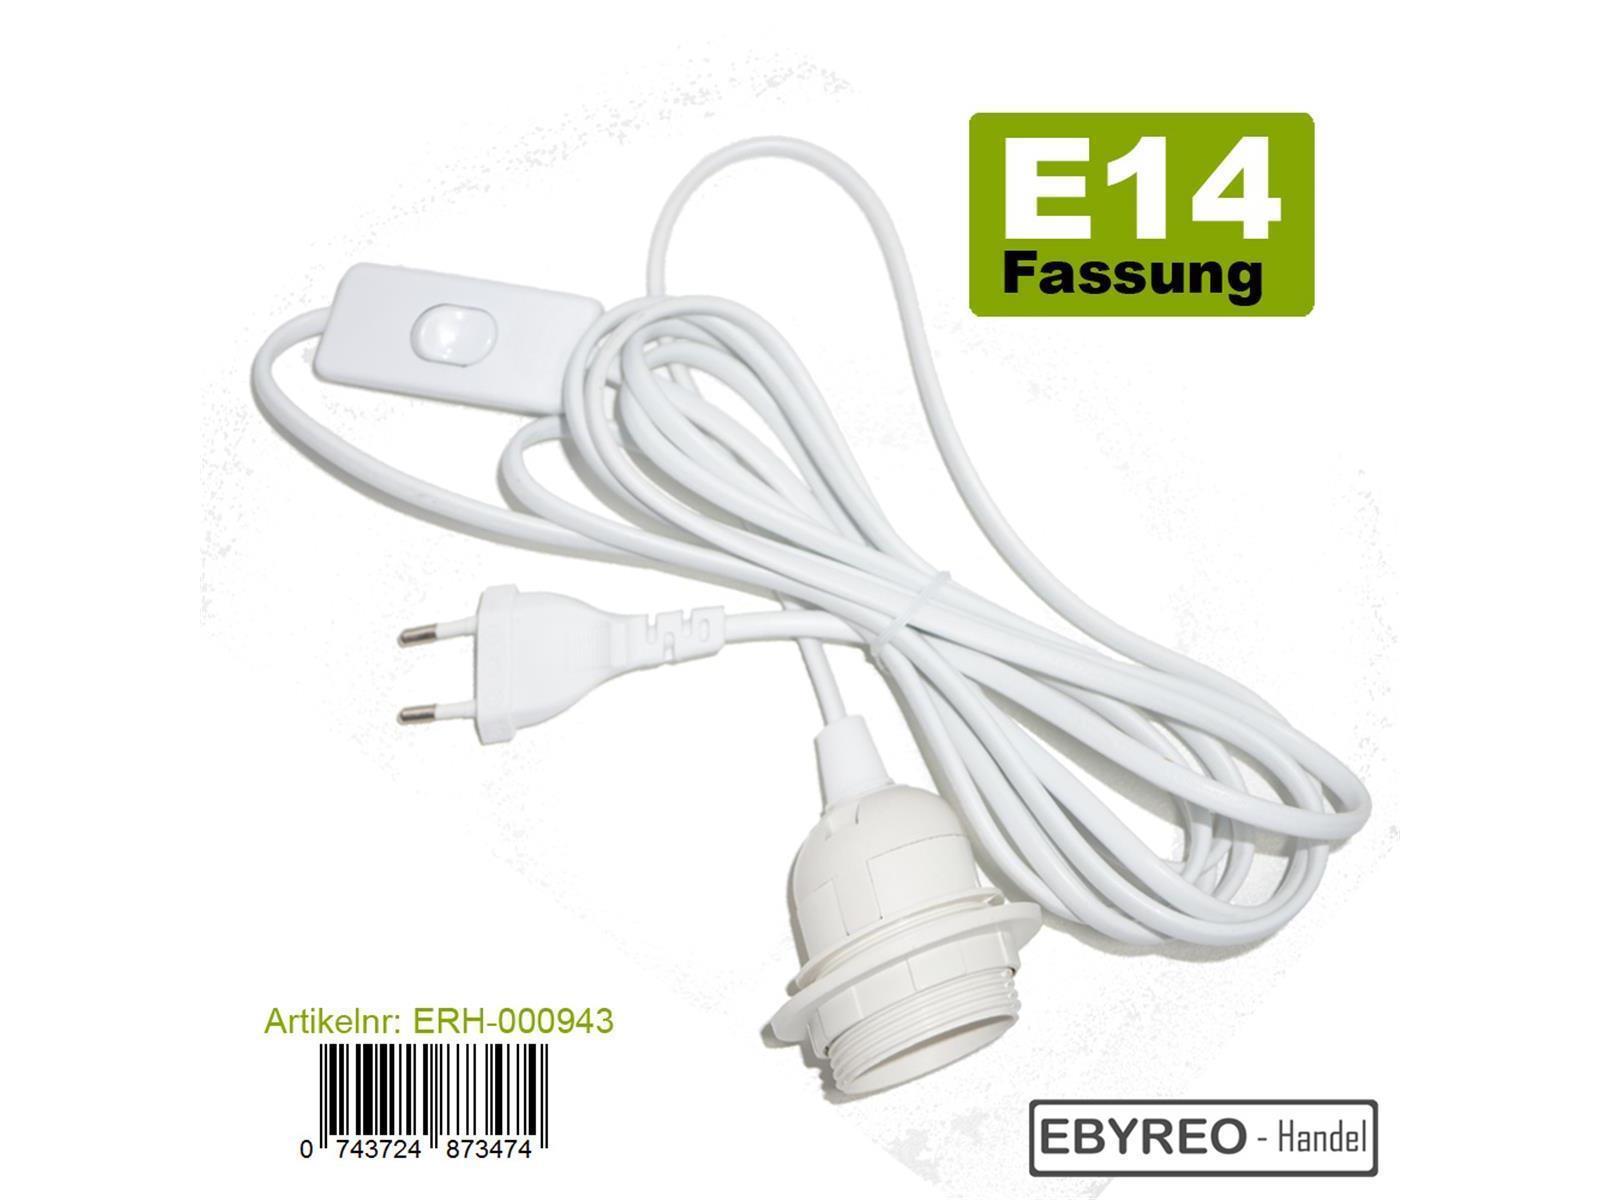 Lampenfassung McShine E14 mit 1,5m Kabel, Schalter und Eurostecker, Fassungen und Adapter, Zubehör